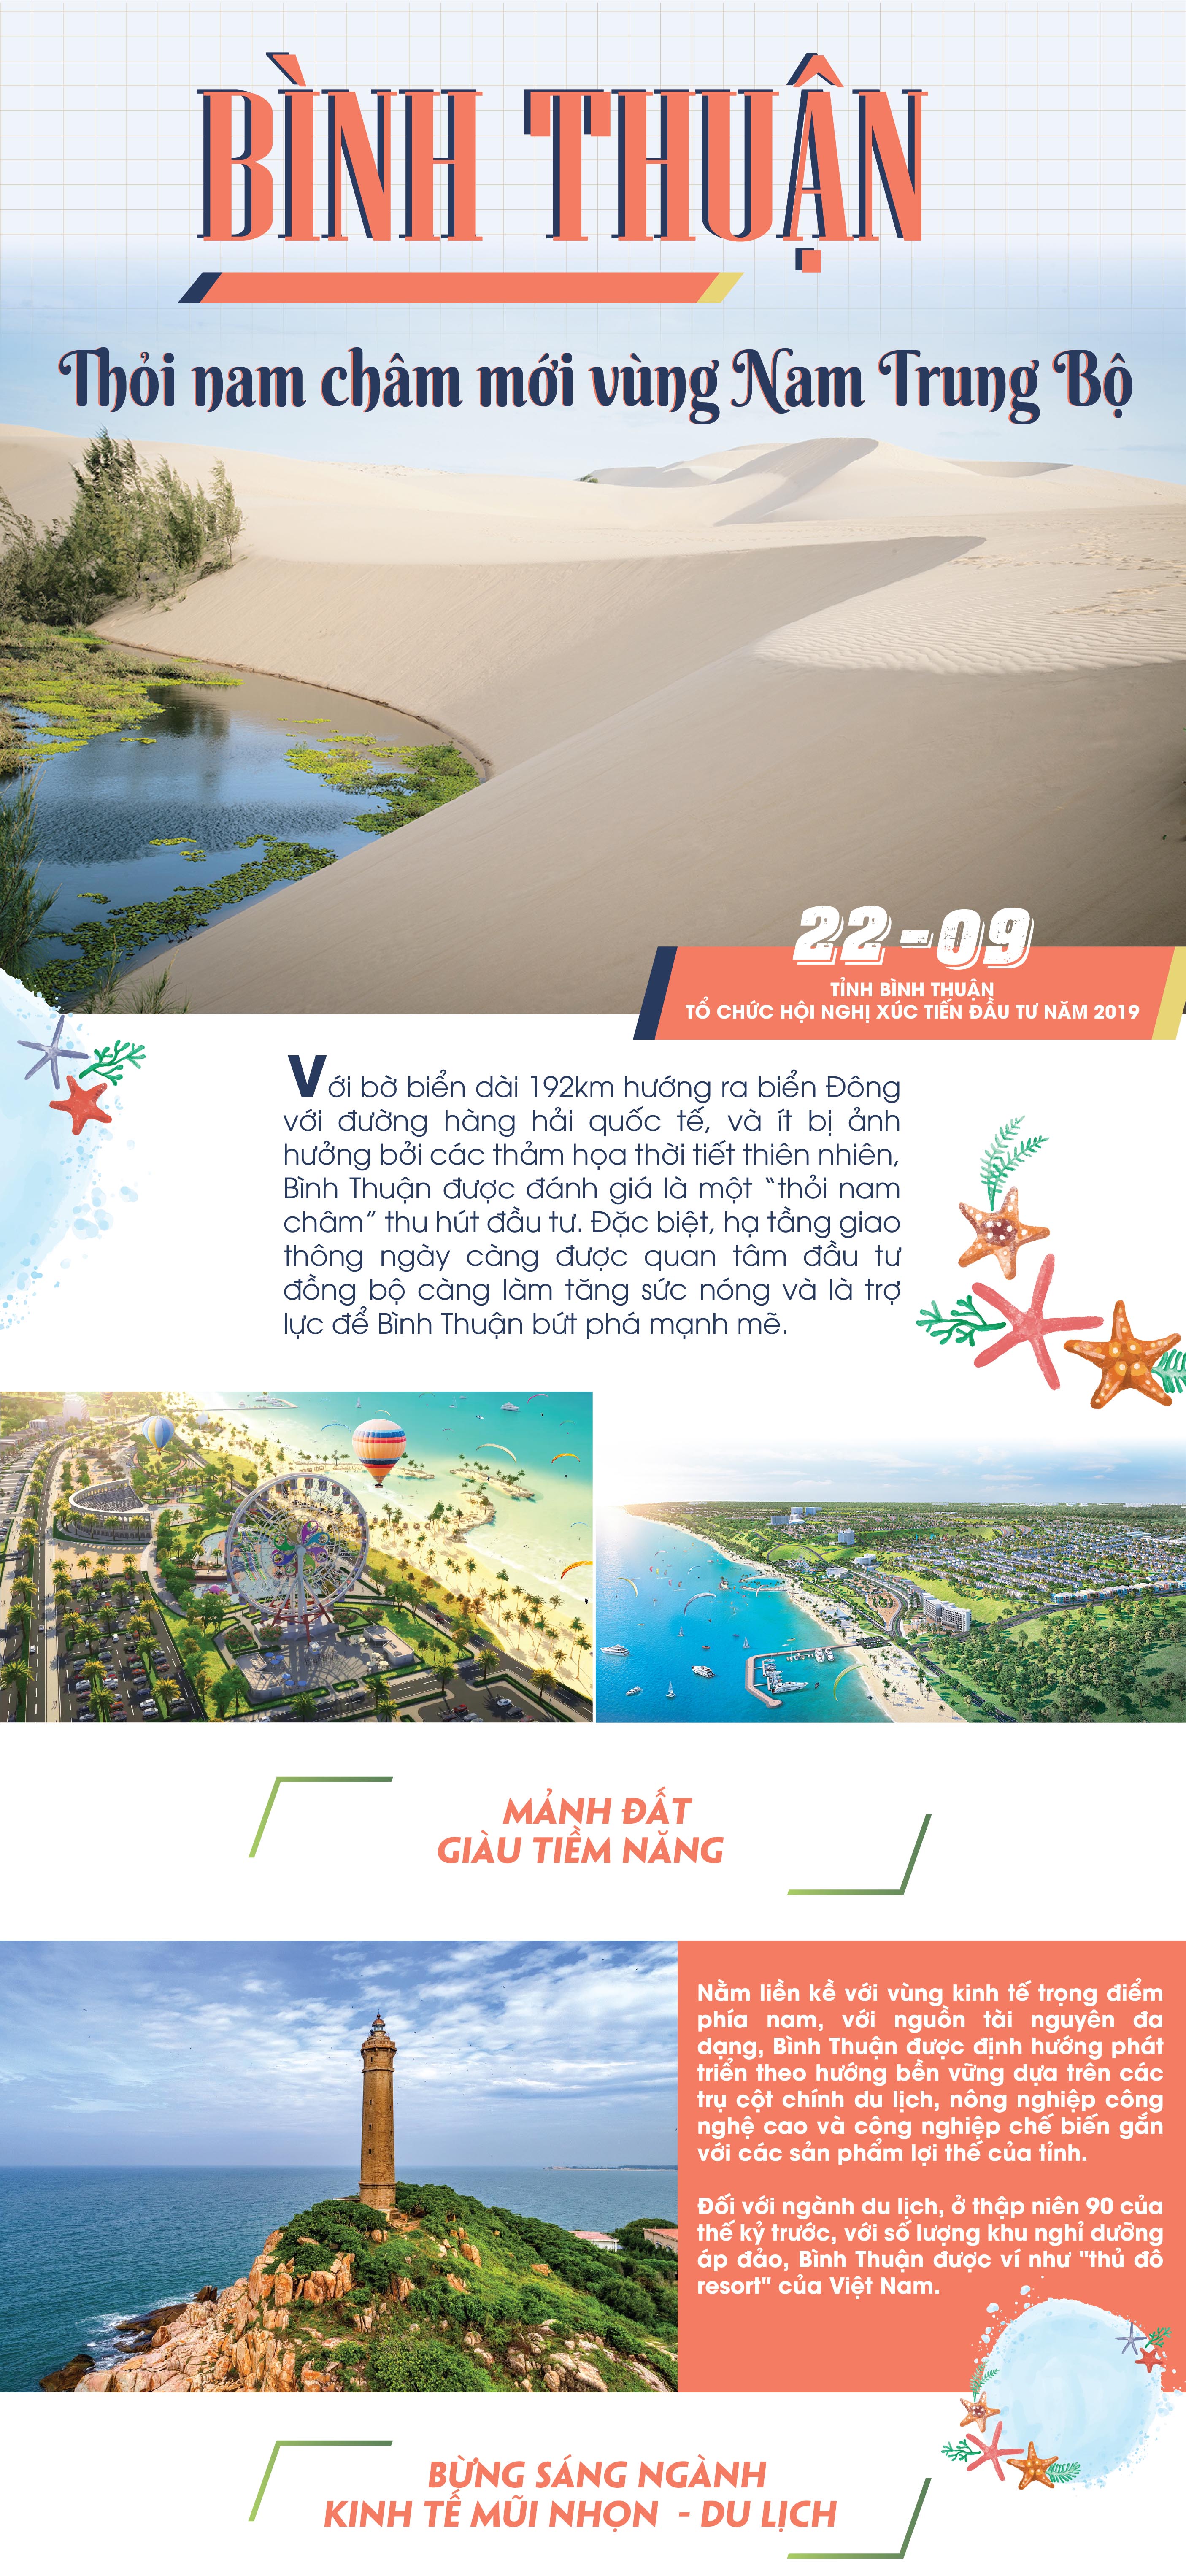 Bình Thuận – Thỏi nam châm mới vùng Nam Trung Bộ